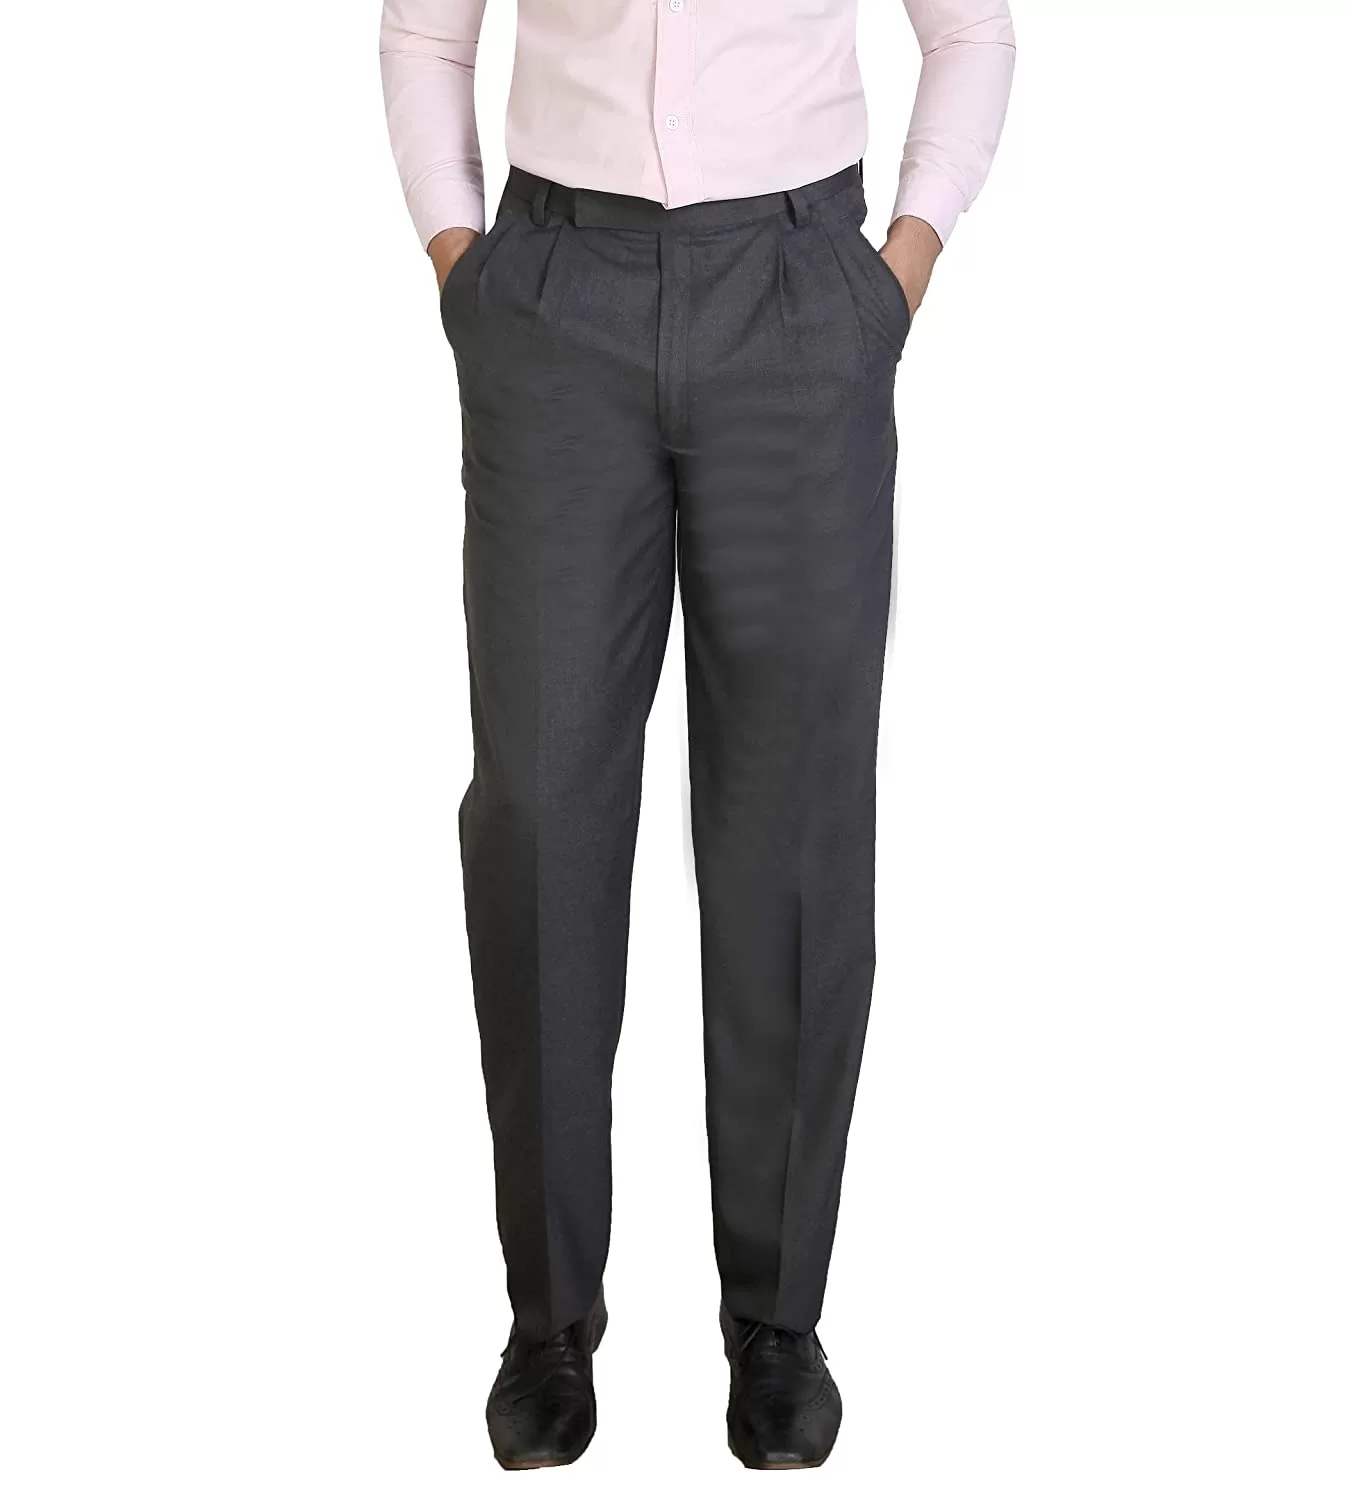 Grey Solid Men Formal Trouser, Slim Fit at Rs 350 in Bhilwara | ID:  2850158105412